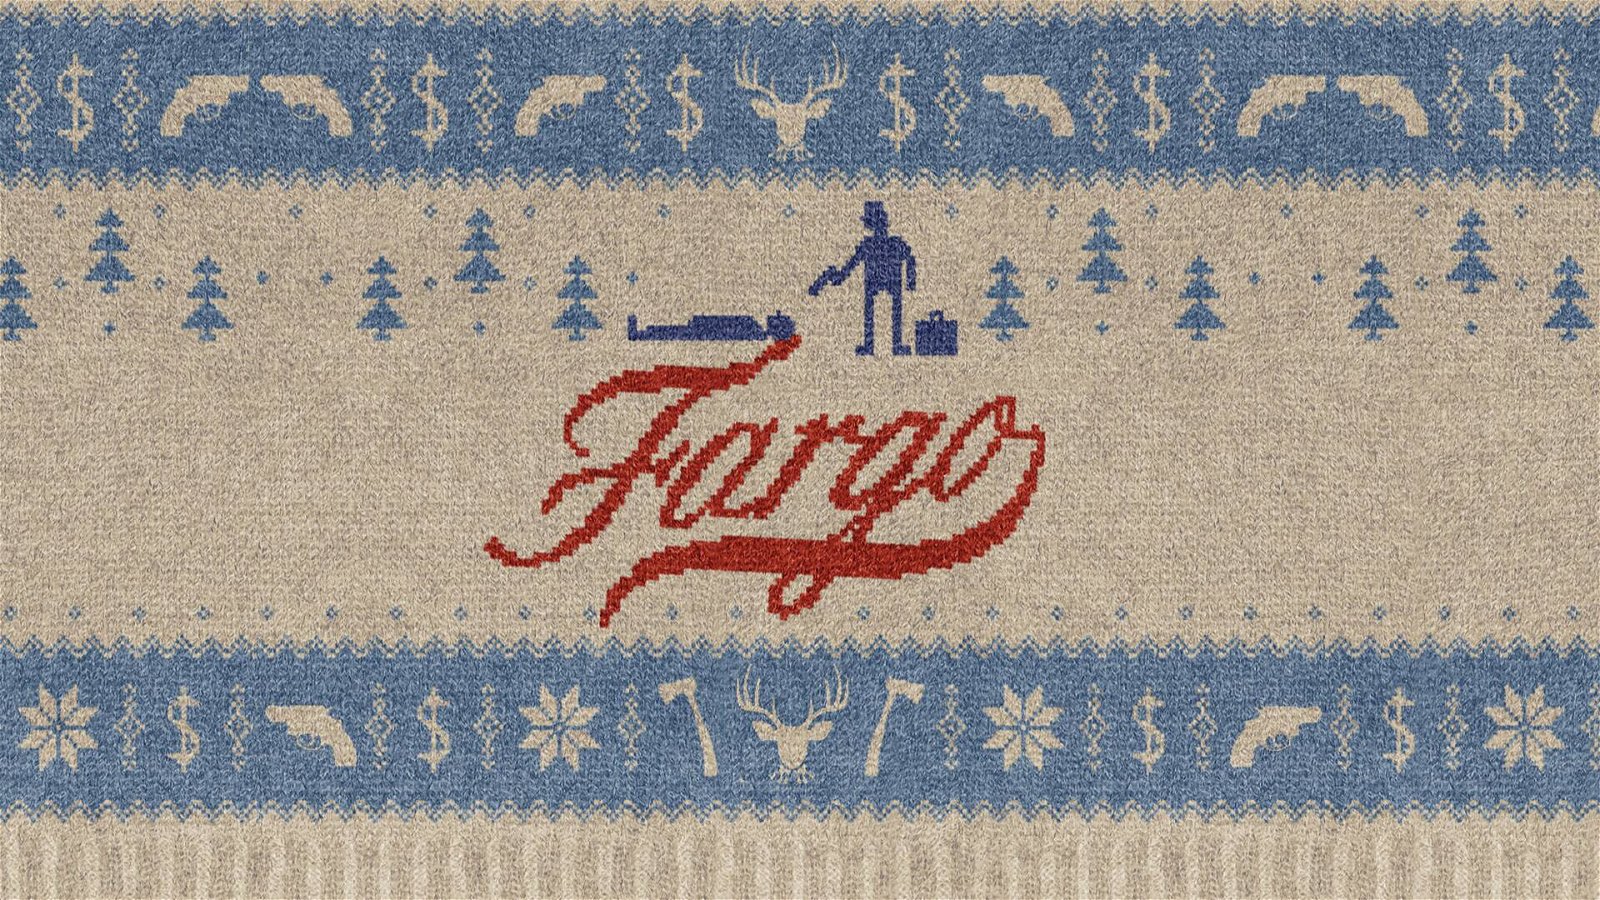 Immagine di Fargo: dal film dei fratelli Coen alla quarta stagione in arrivo